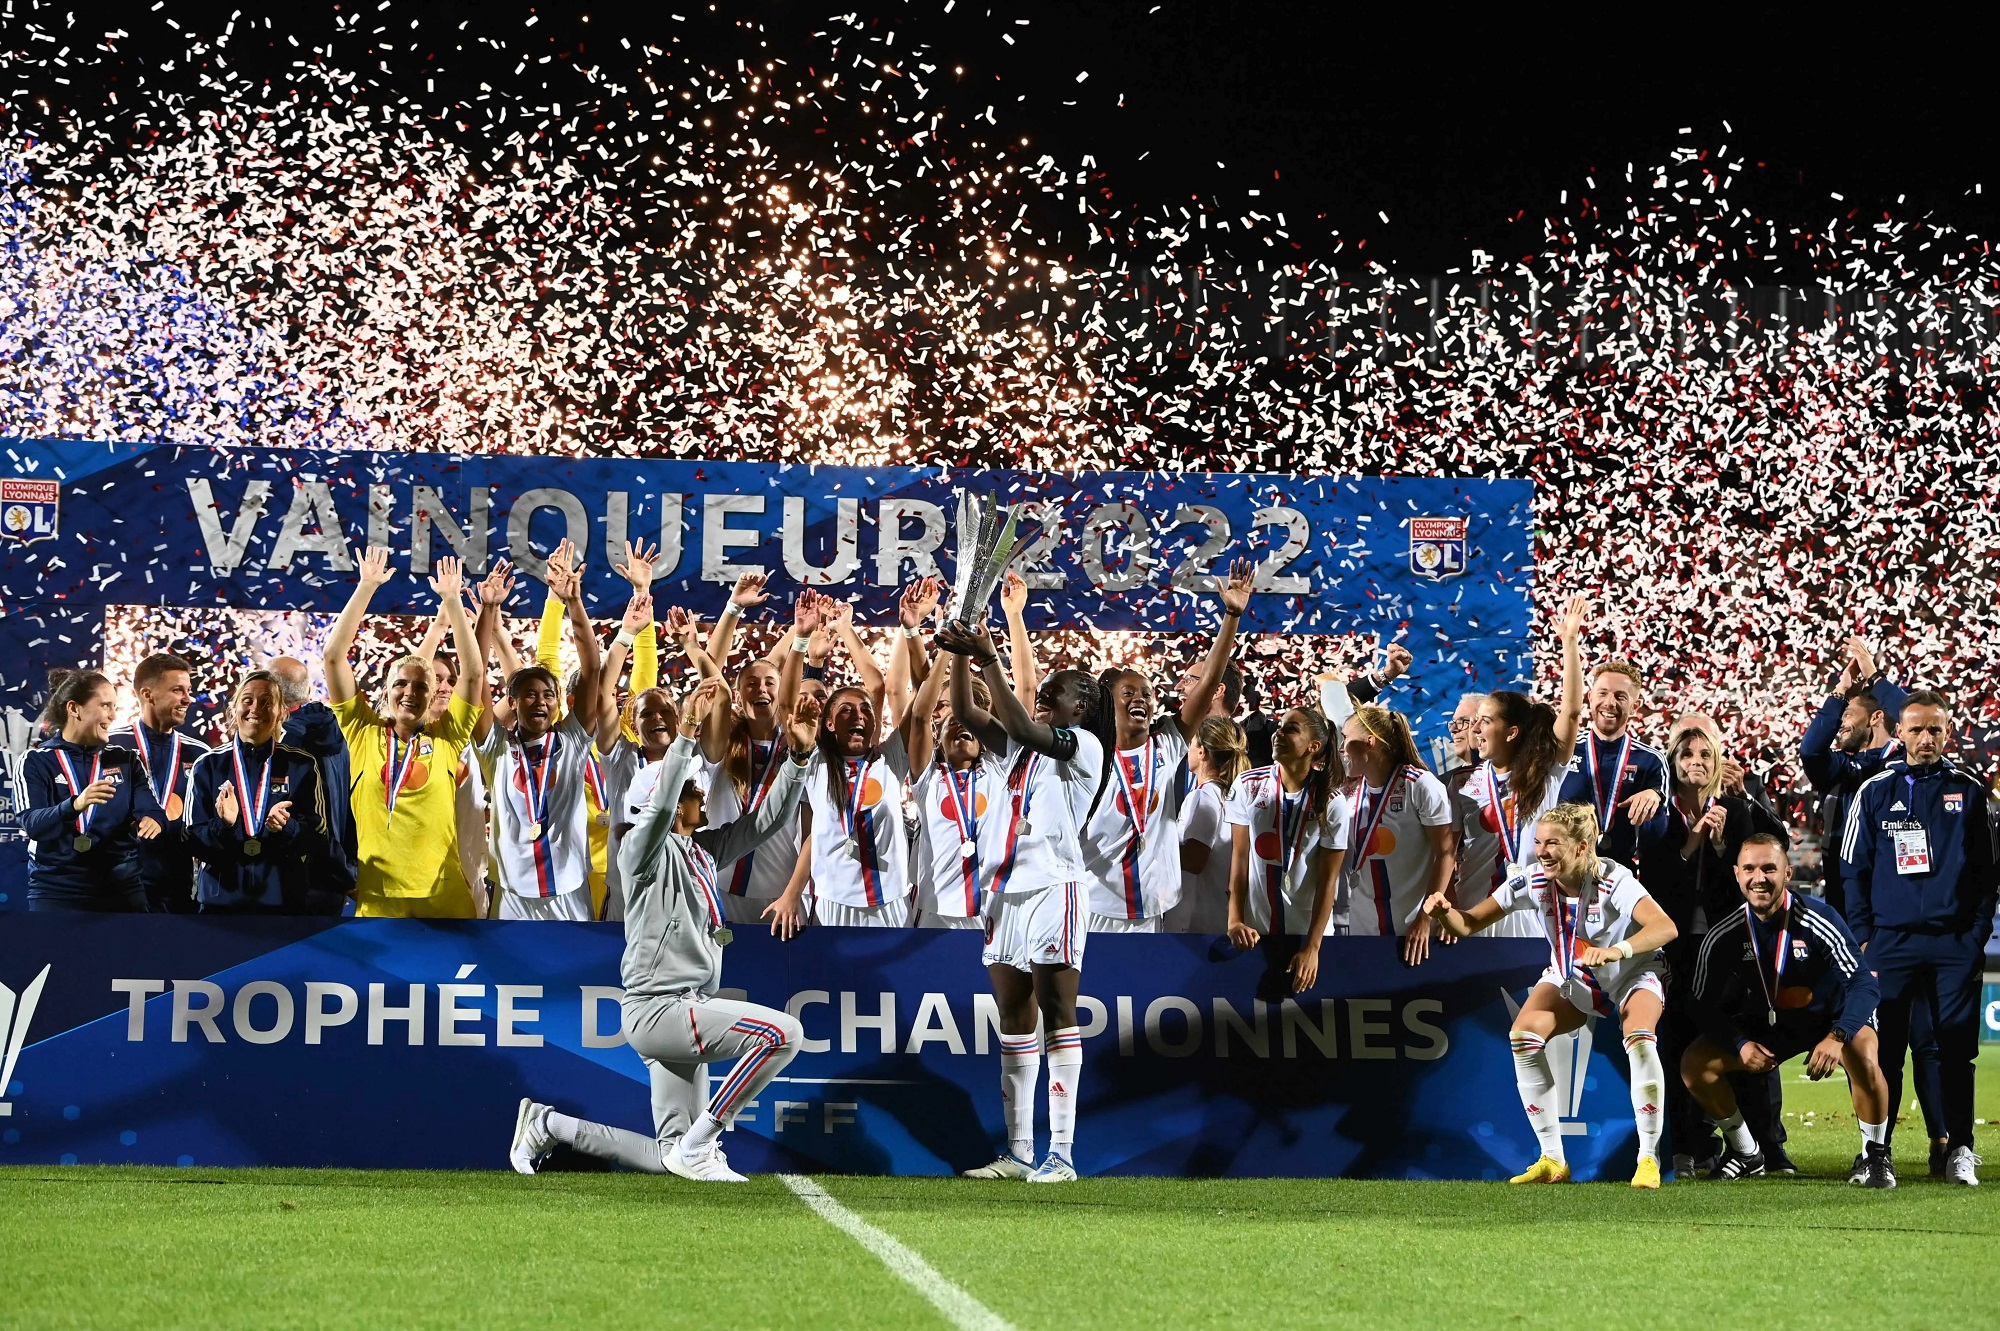 Le trophée remis aux Lyonnaises (photo FFF)